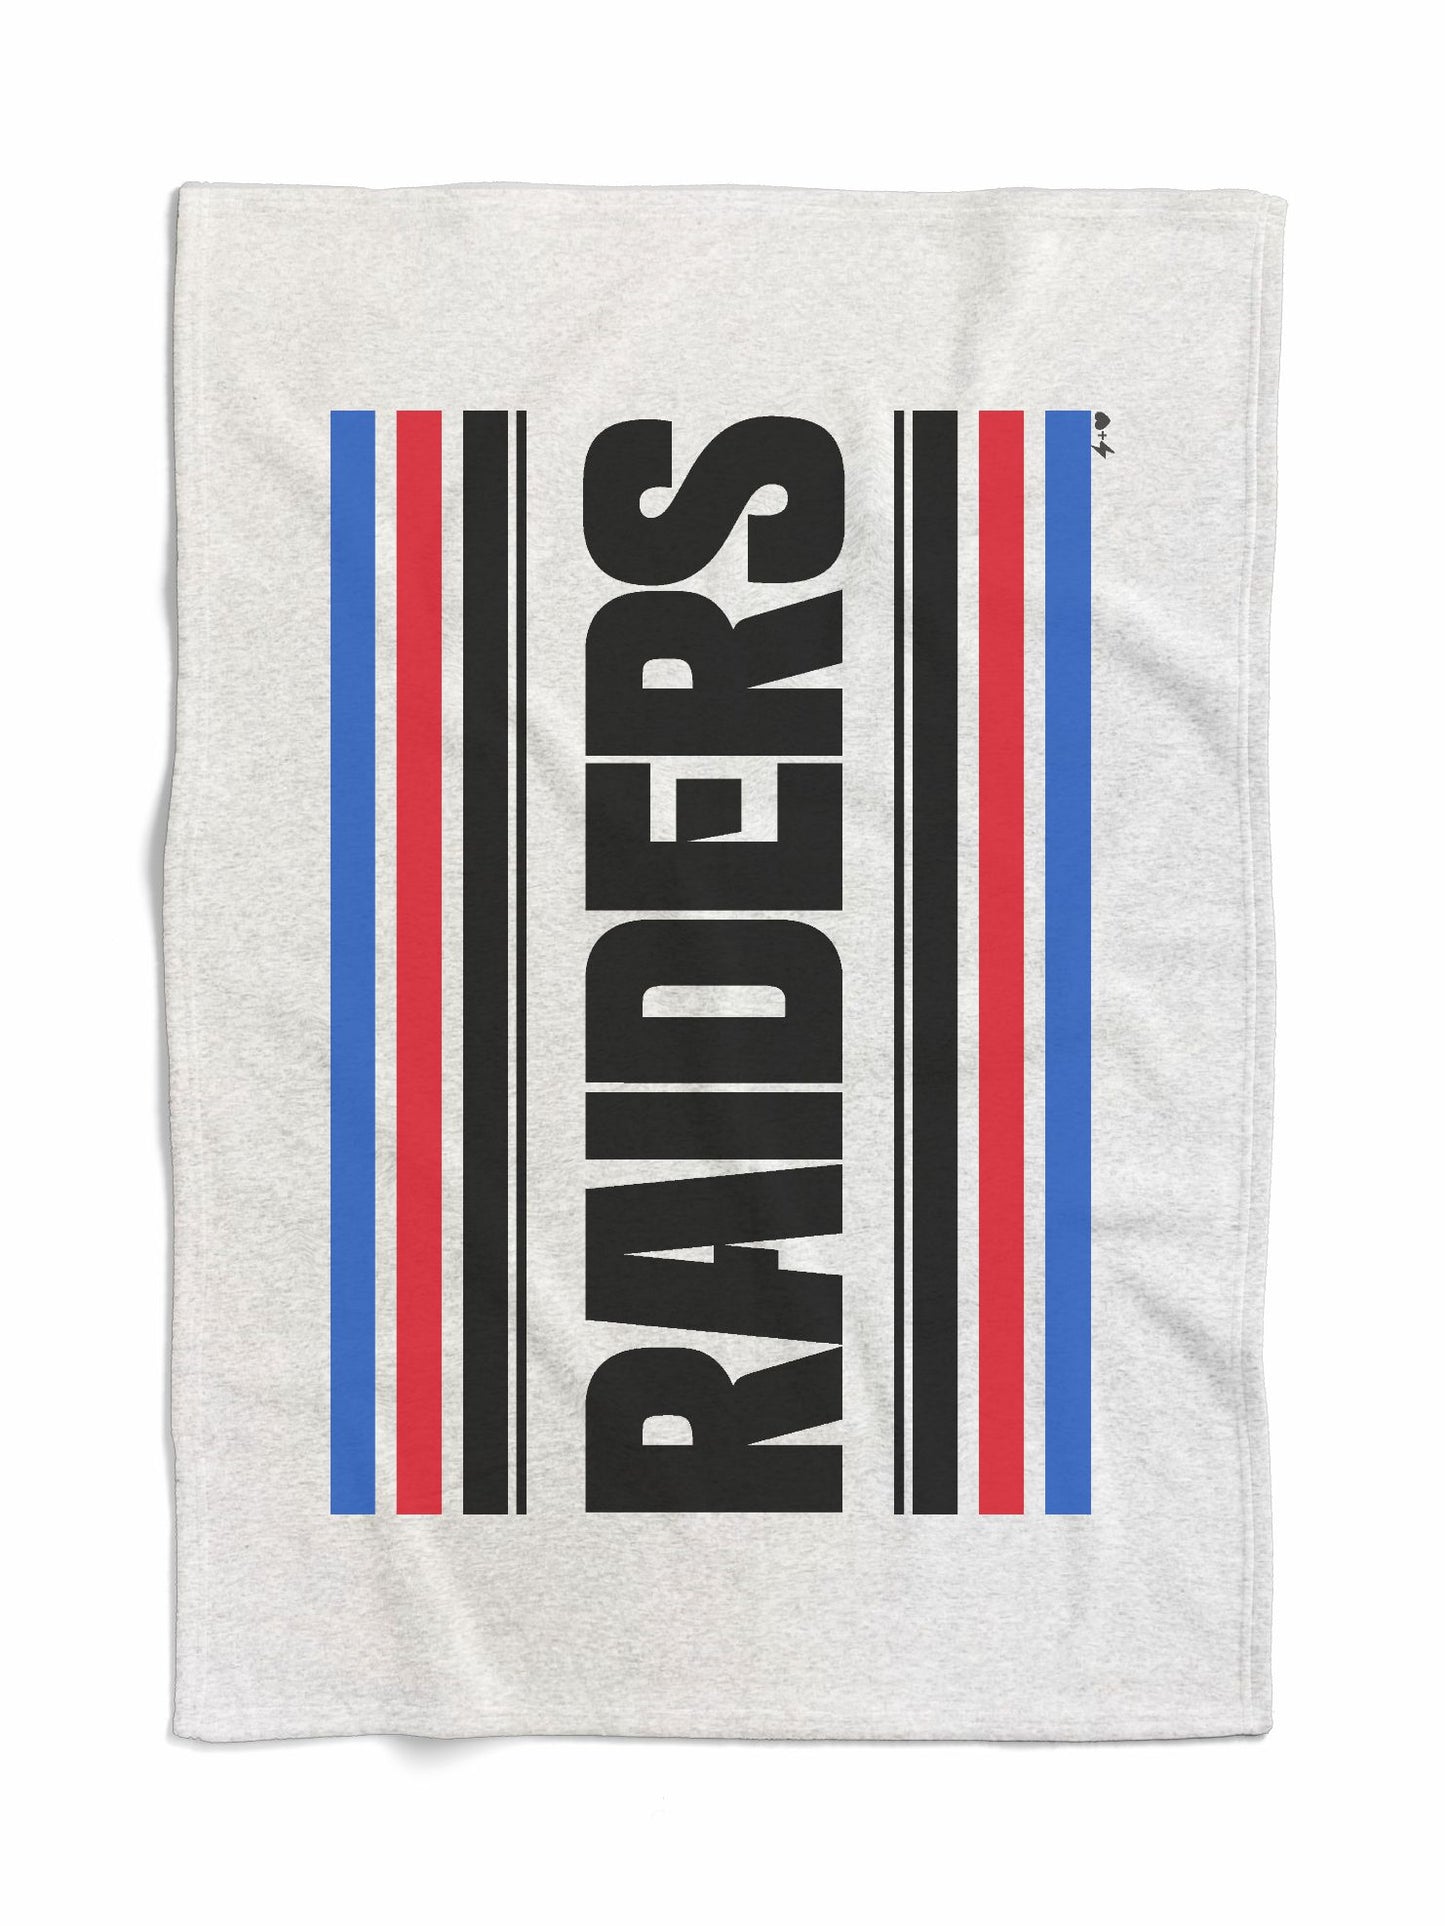 Raiders Sweatshirt Blanket